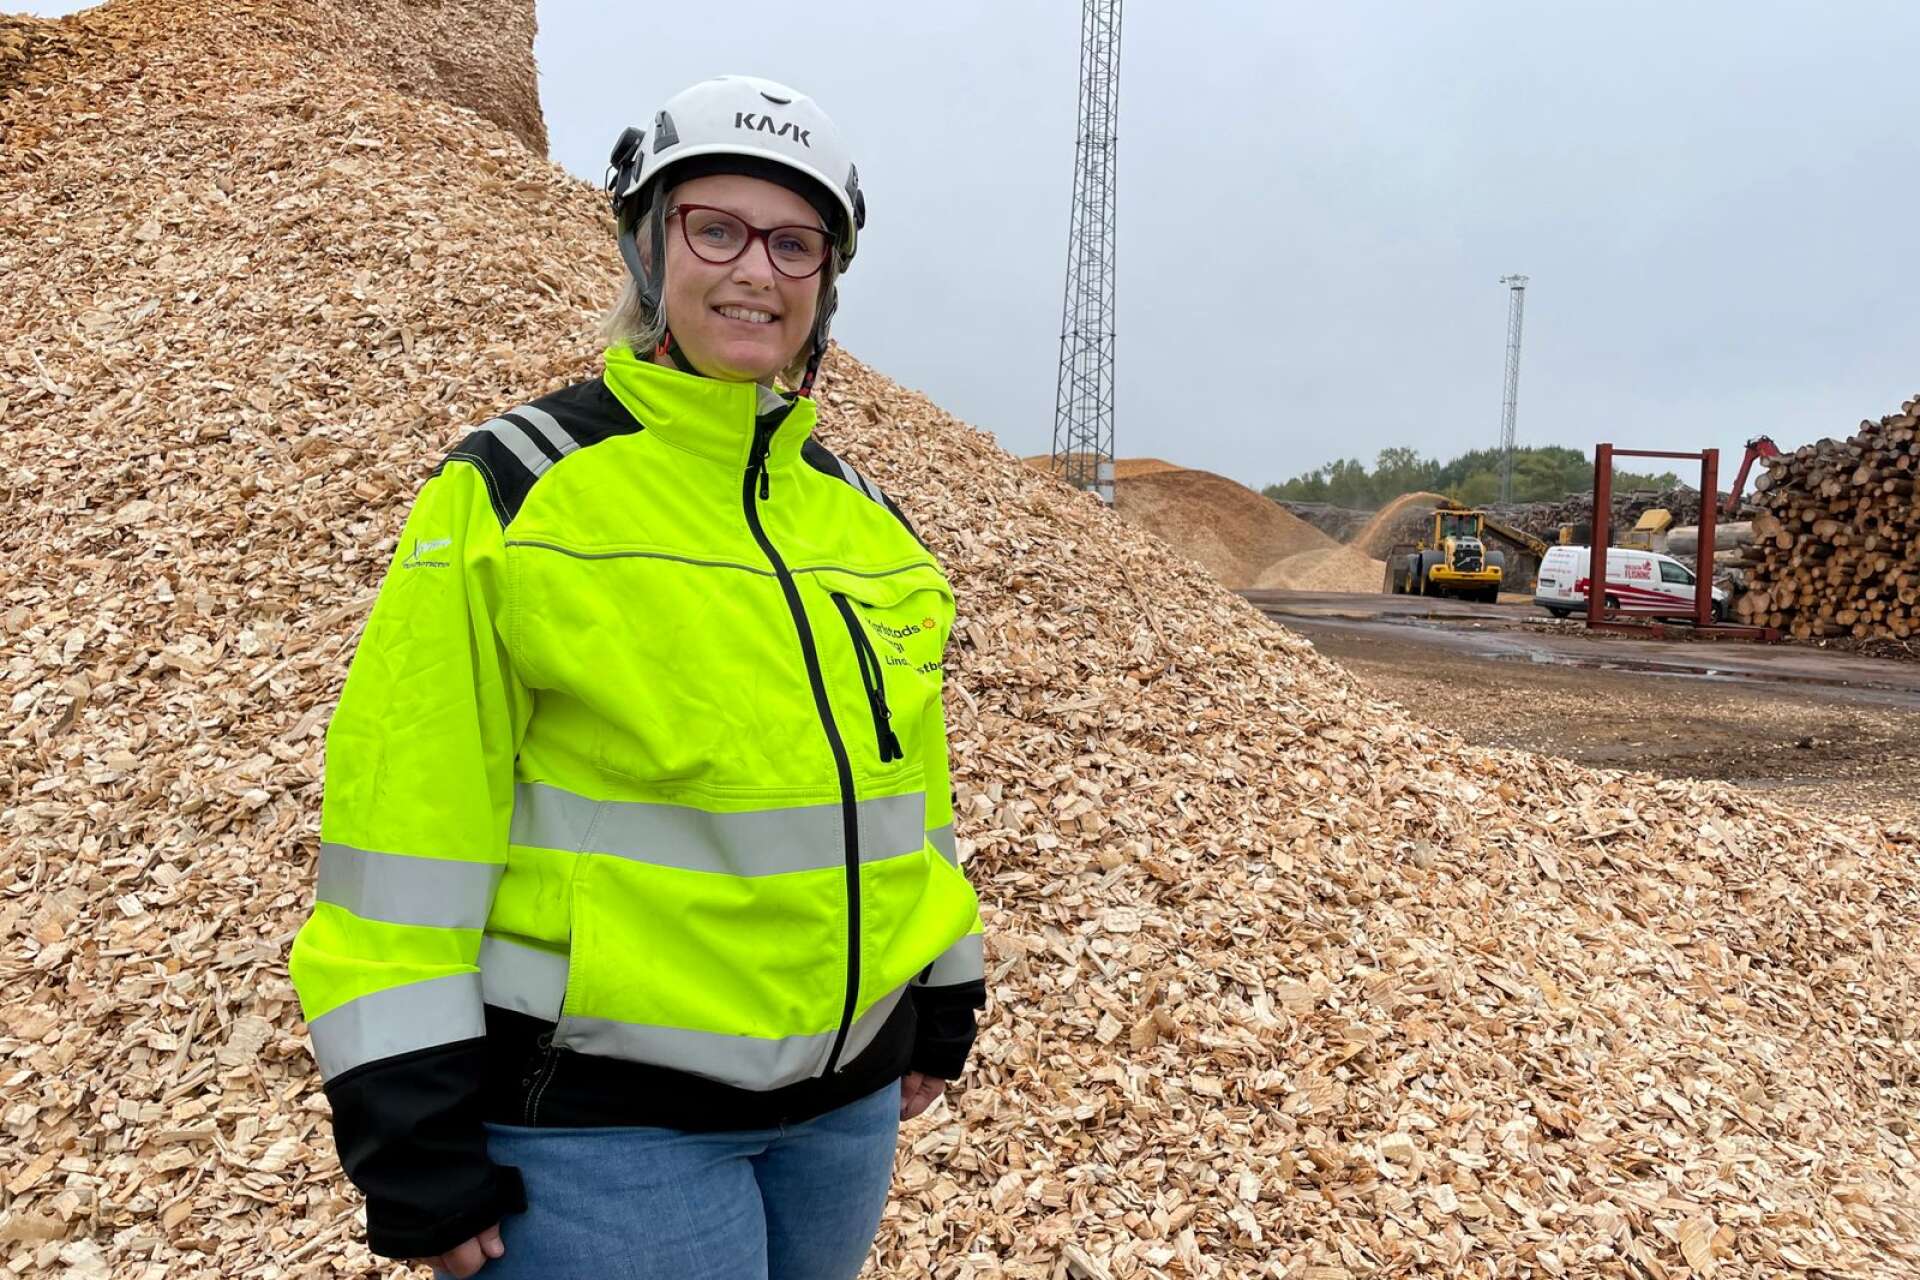 Skogsresterna, groten. är en viktig råvara för kraftvärmeverket vid Heden, konstaterar Linda Östberg, produktionschef vid Karlstads Energi.